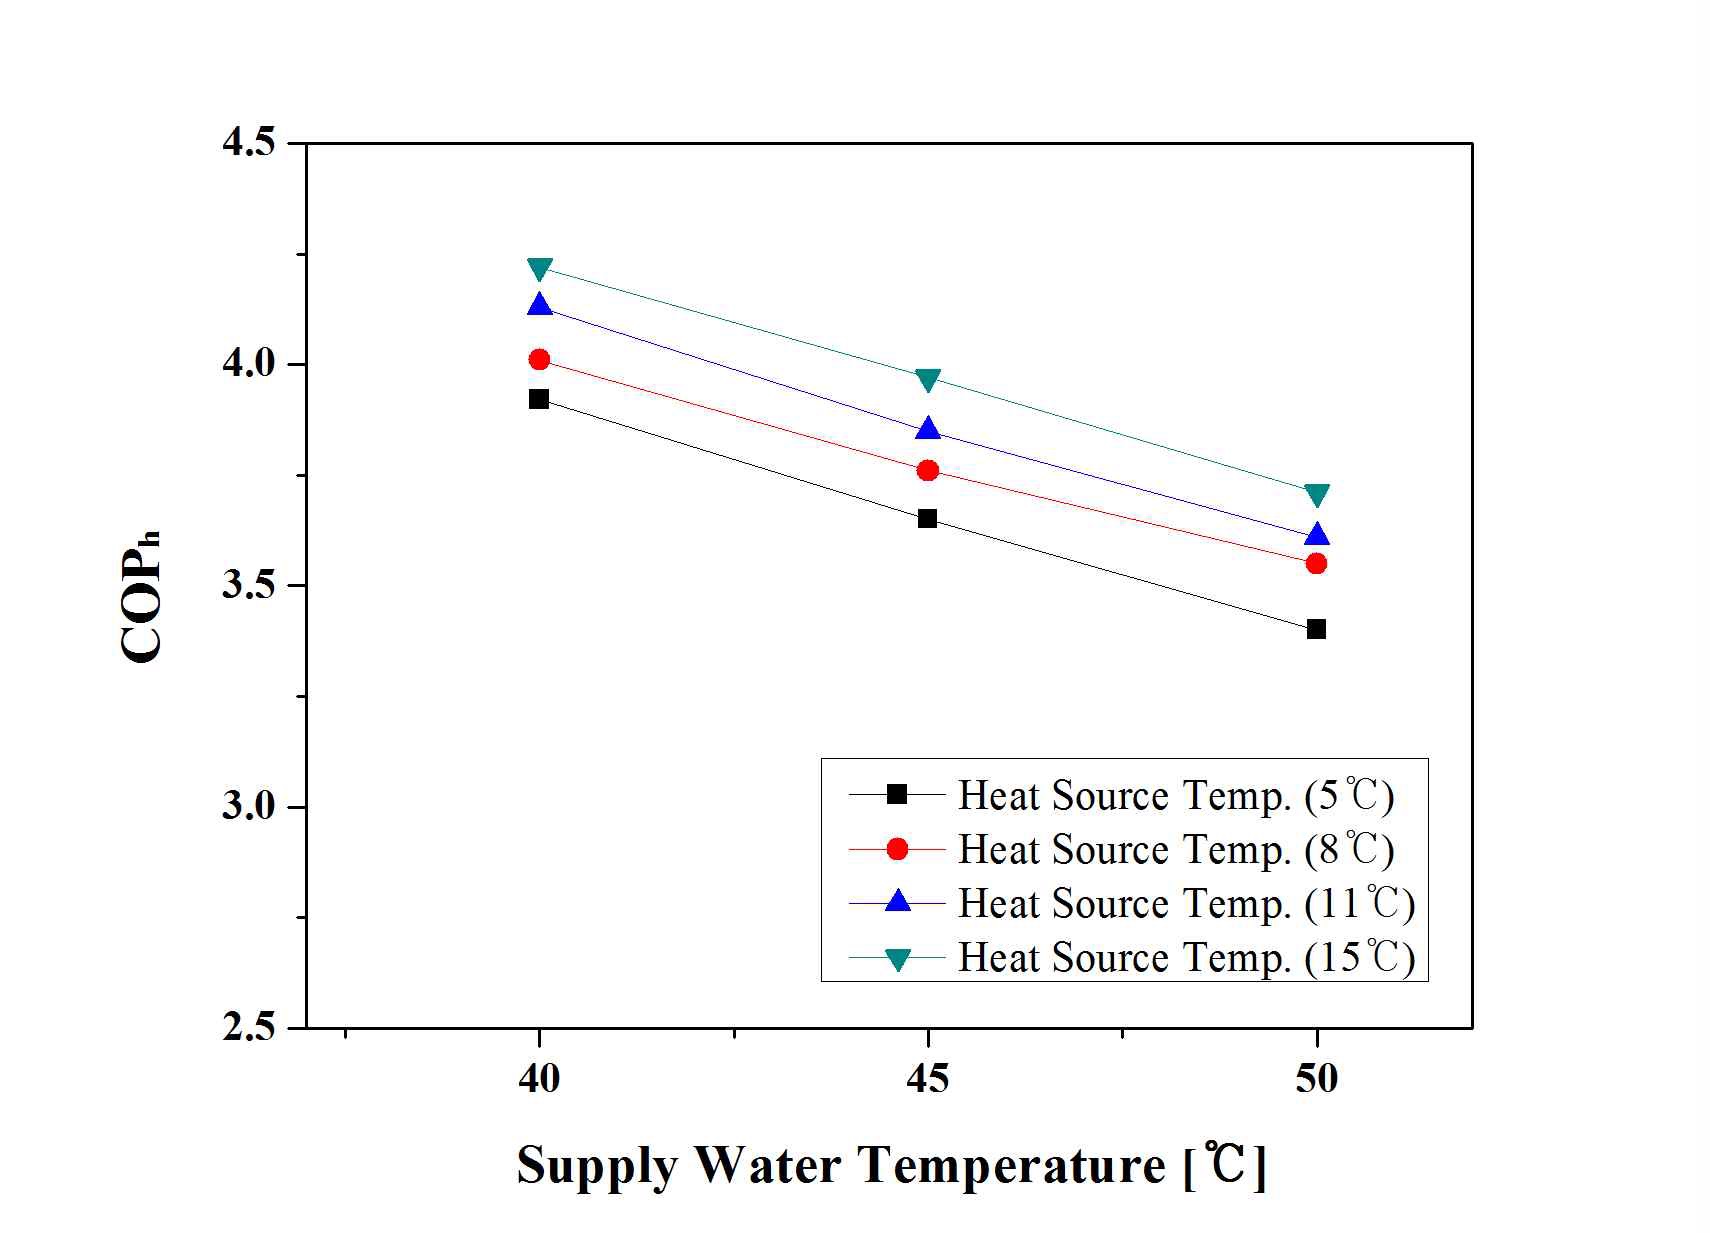 온수공급온도에 따른 난방COP의 변화